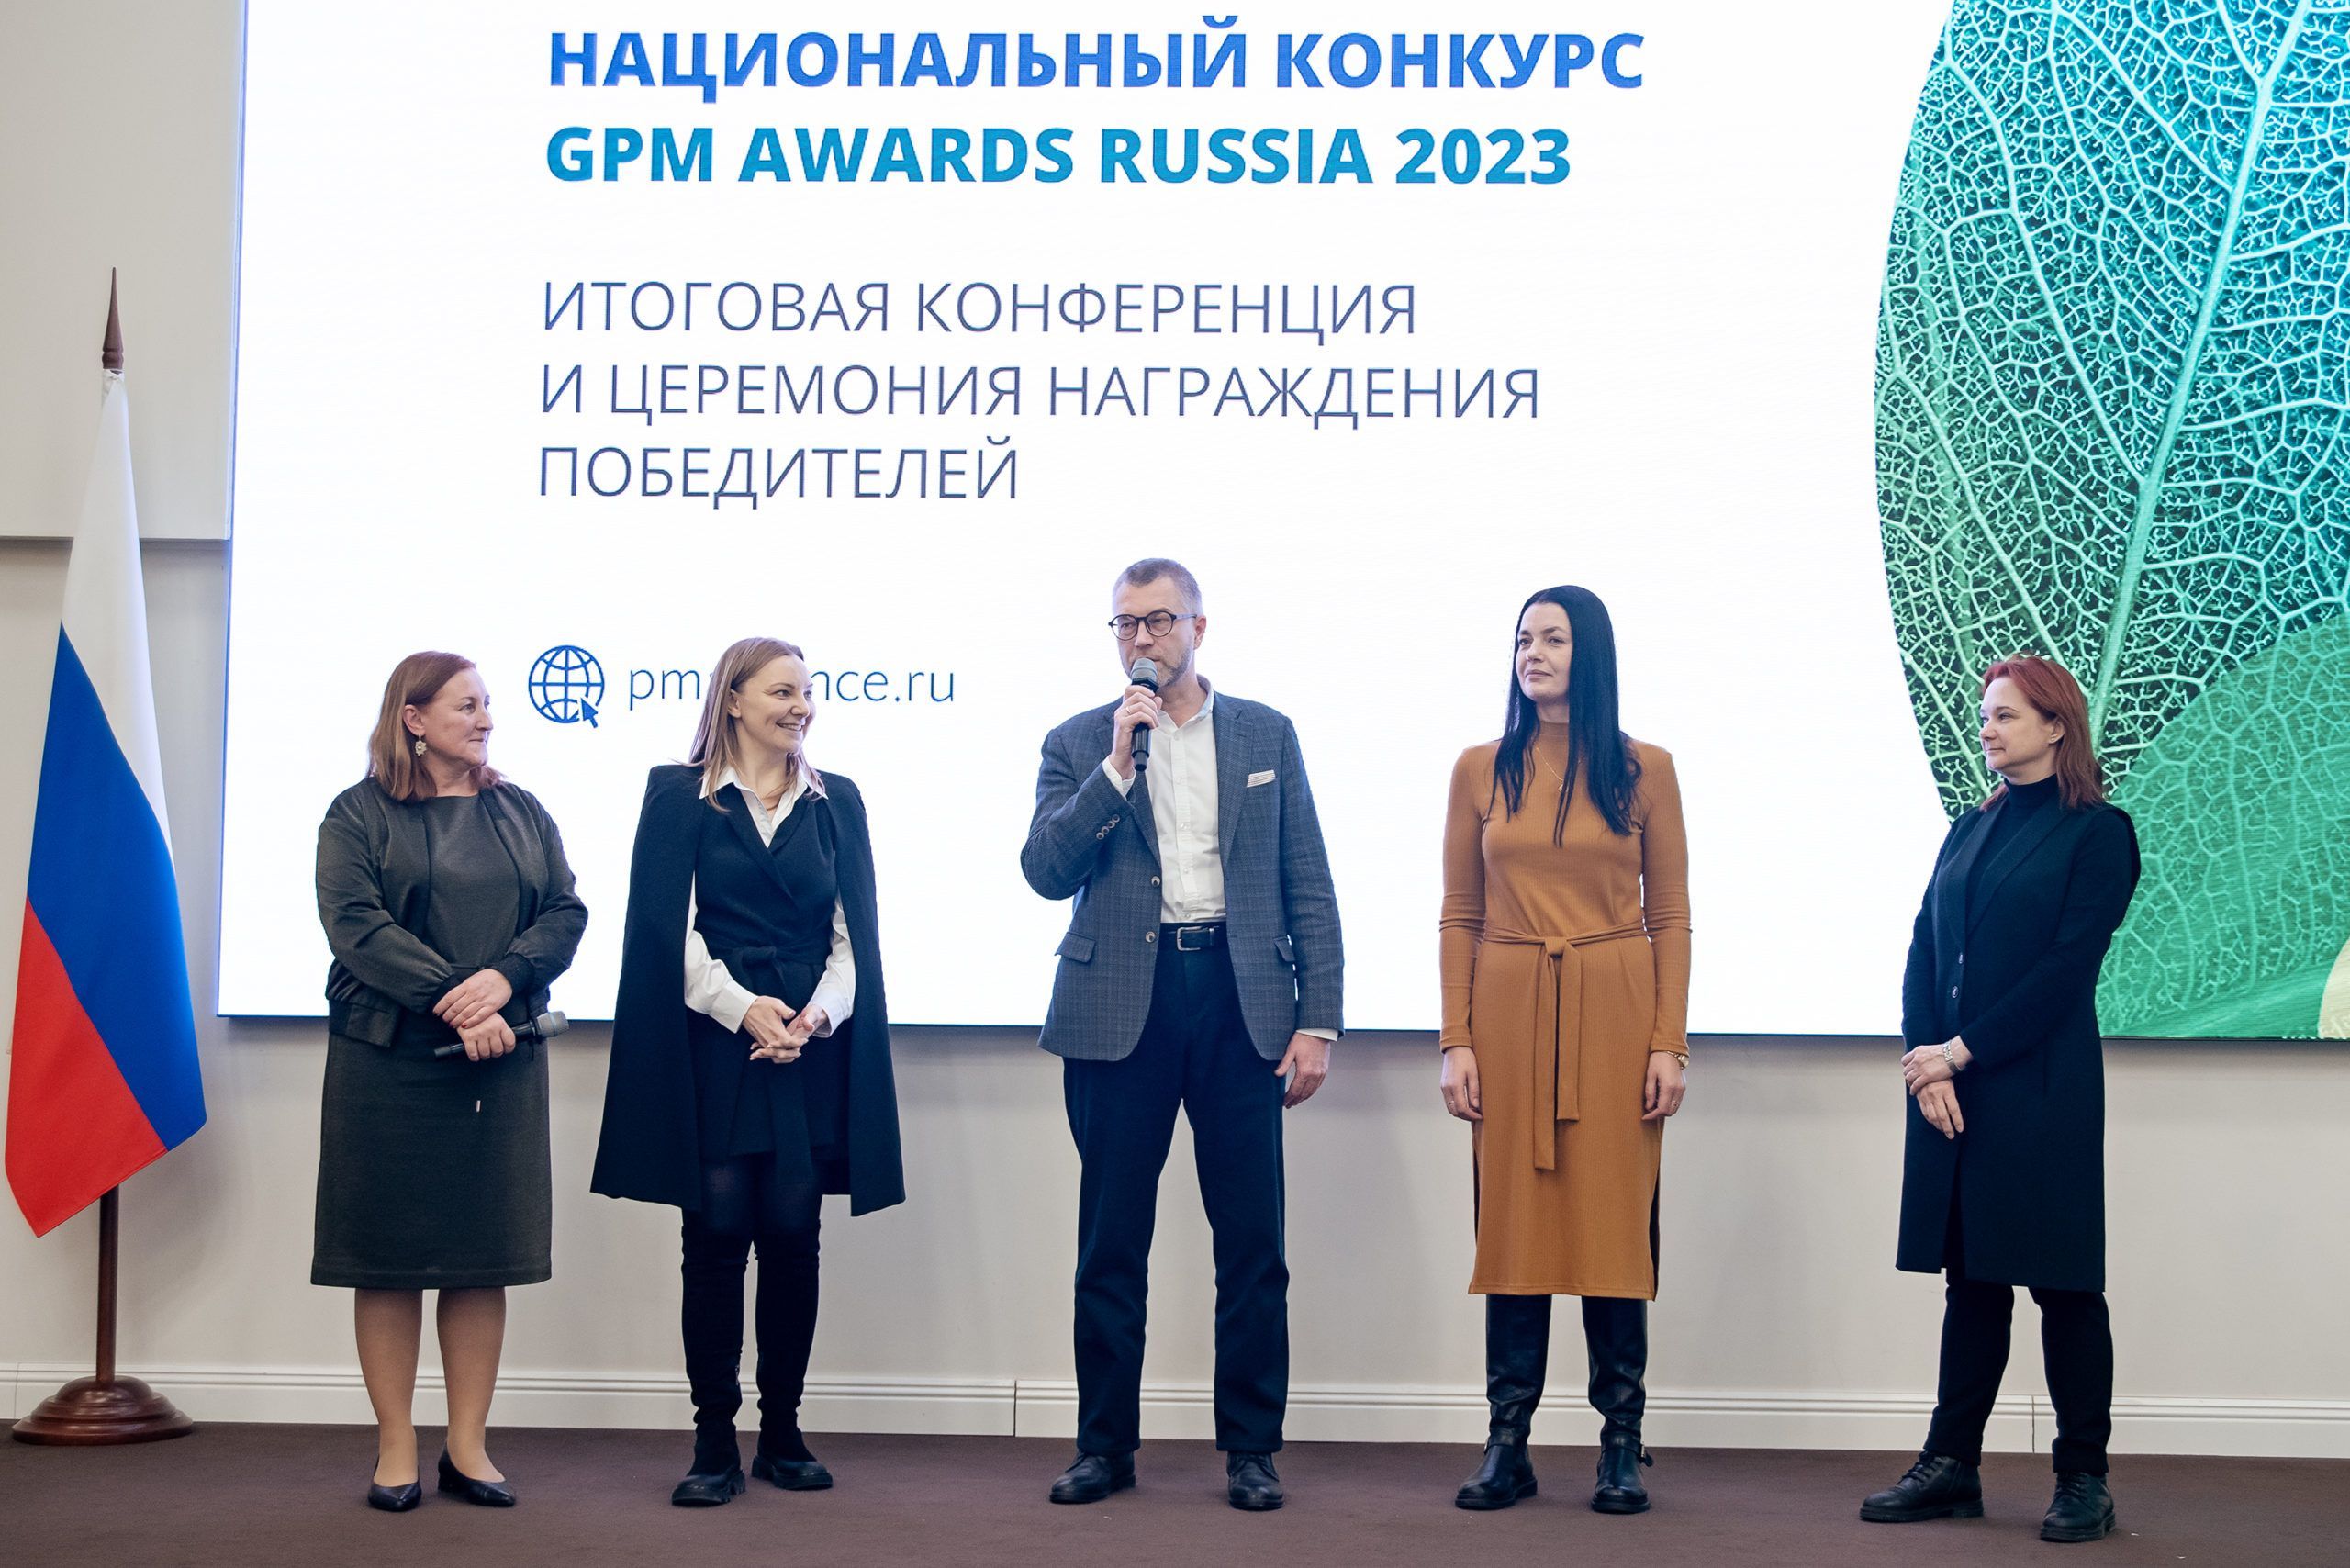 В 2024 году пройдет пятый юбилейный Национальный конкурс GPM Awards Russia